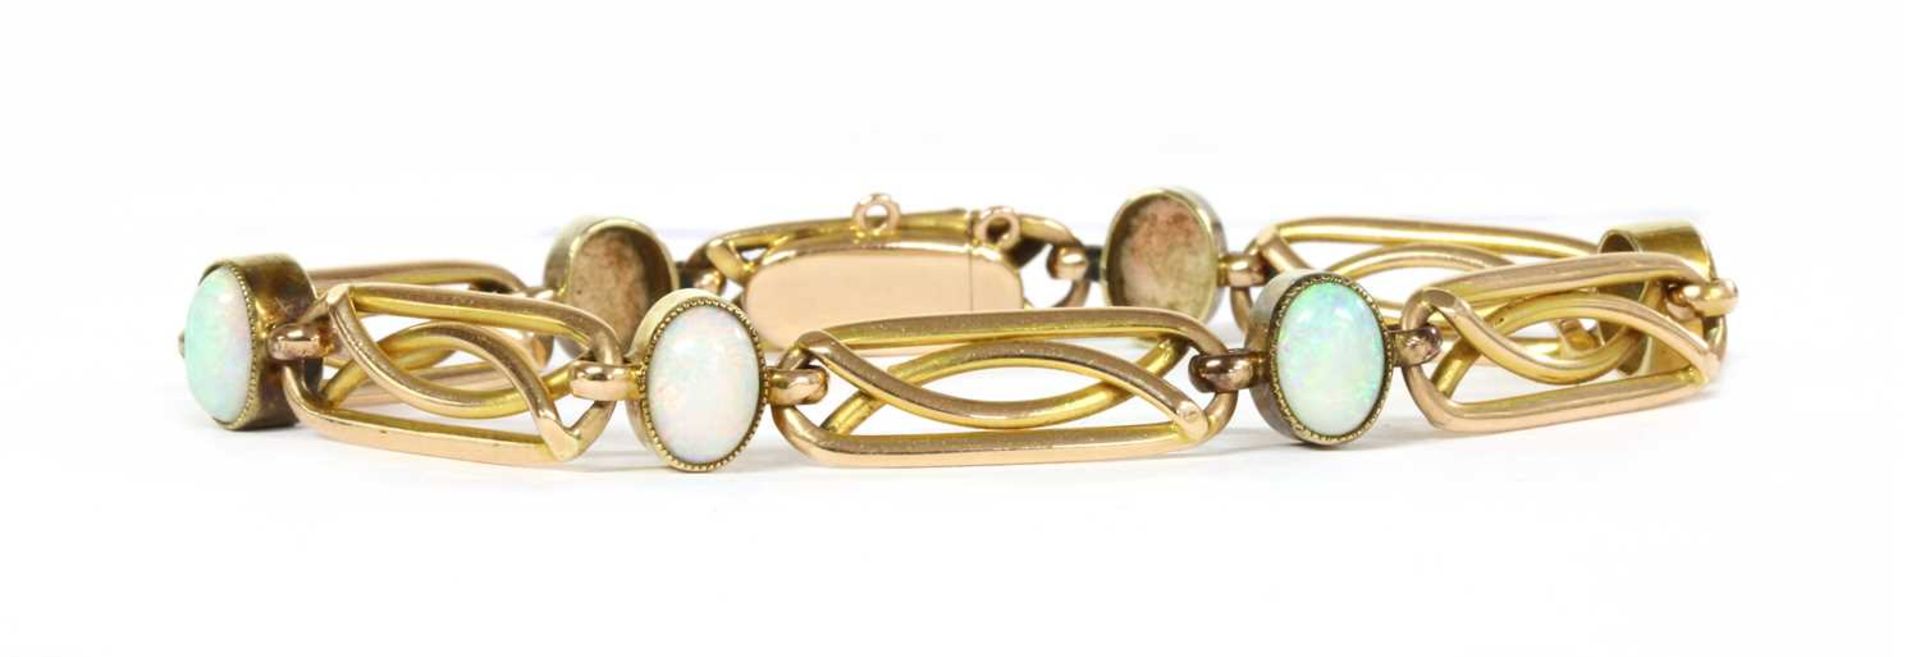 A gold opal bracelet,